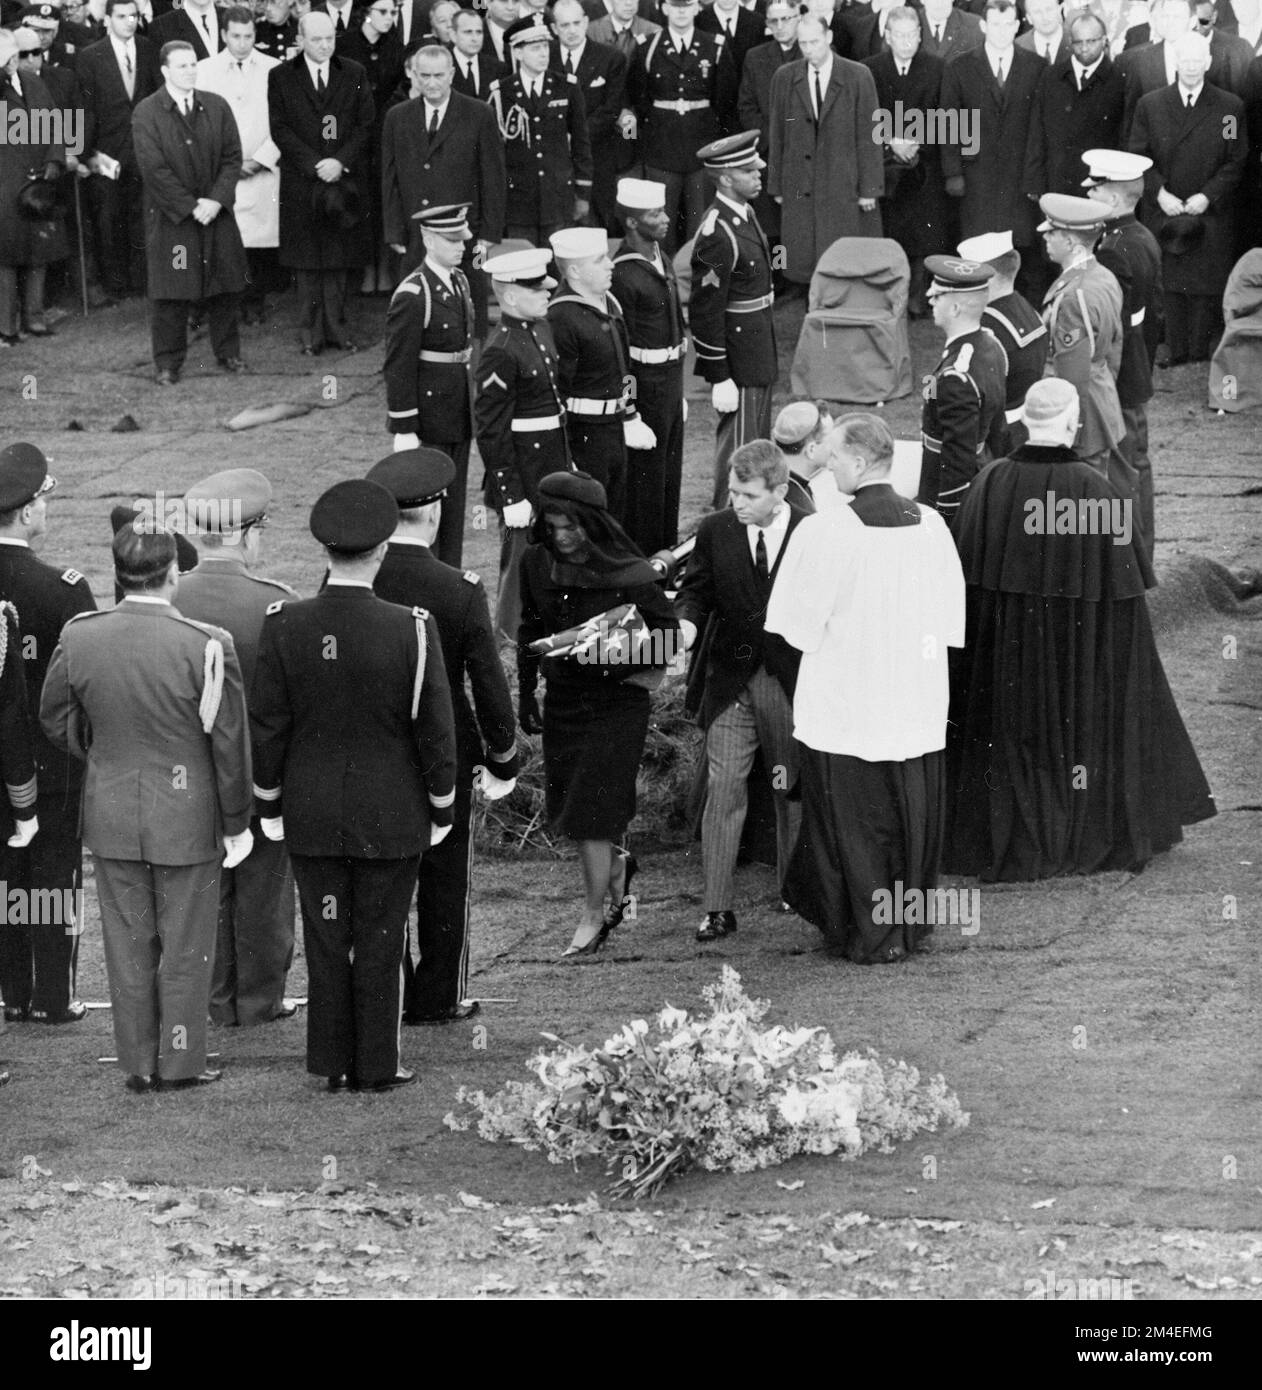 Jacqueline Kennedy et le procureur général Robert F. Kennedy s'éloignent du cercueil du président Kennedy pendant l'internement au cimetière national d'Arlington sur 25 novembre 1963. Banque D'Images